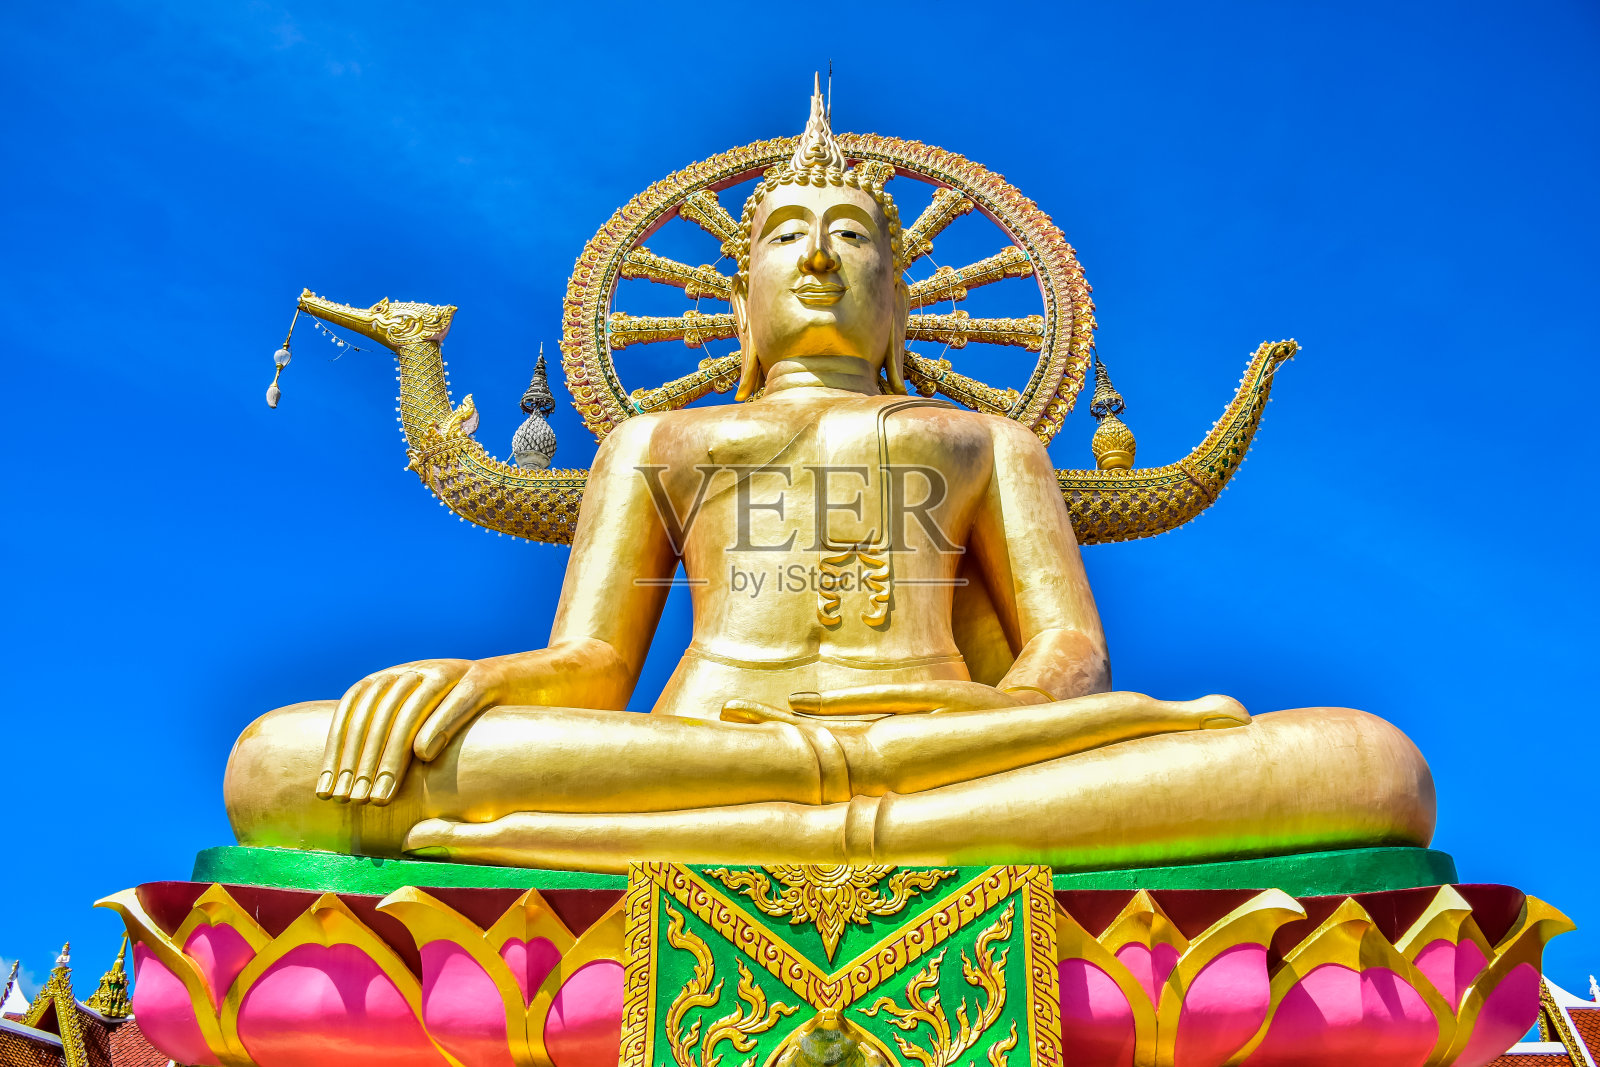 泰国苏梅岛著名旅游景点之一的雅艾寺佛寺大佛雕像照片摄影图片